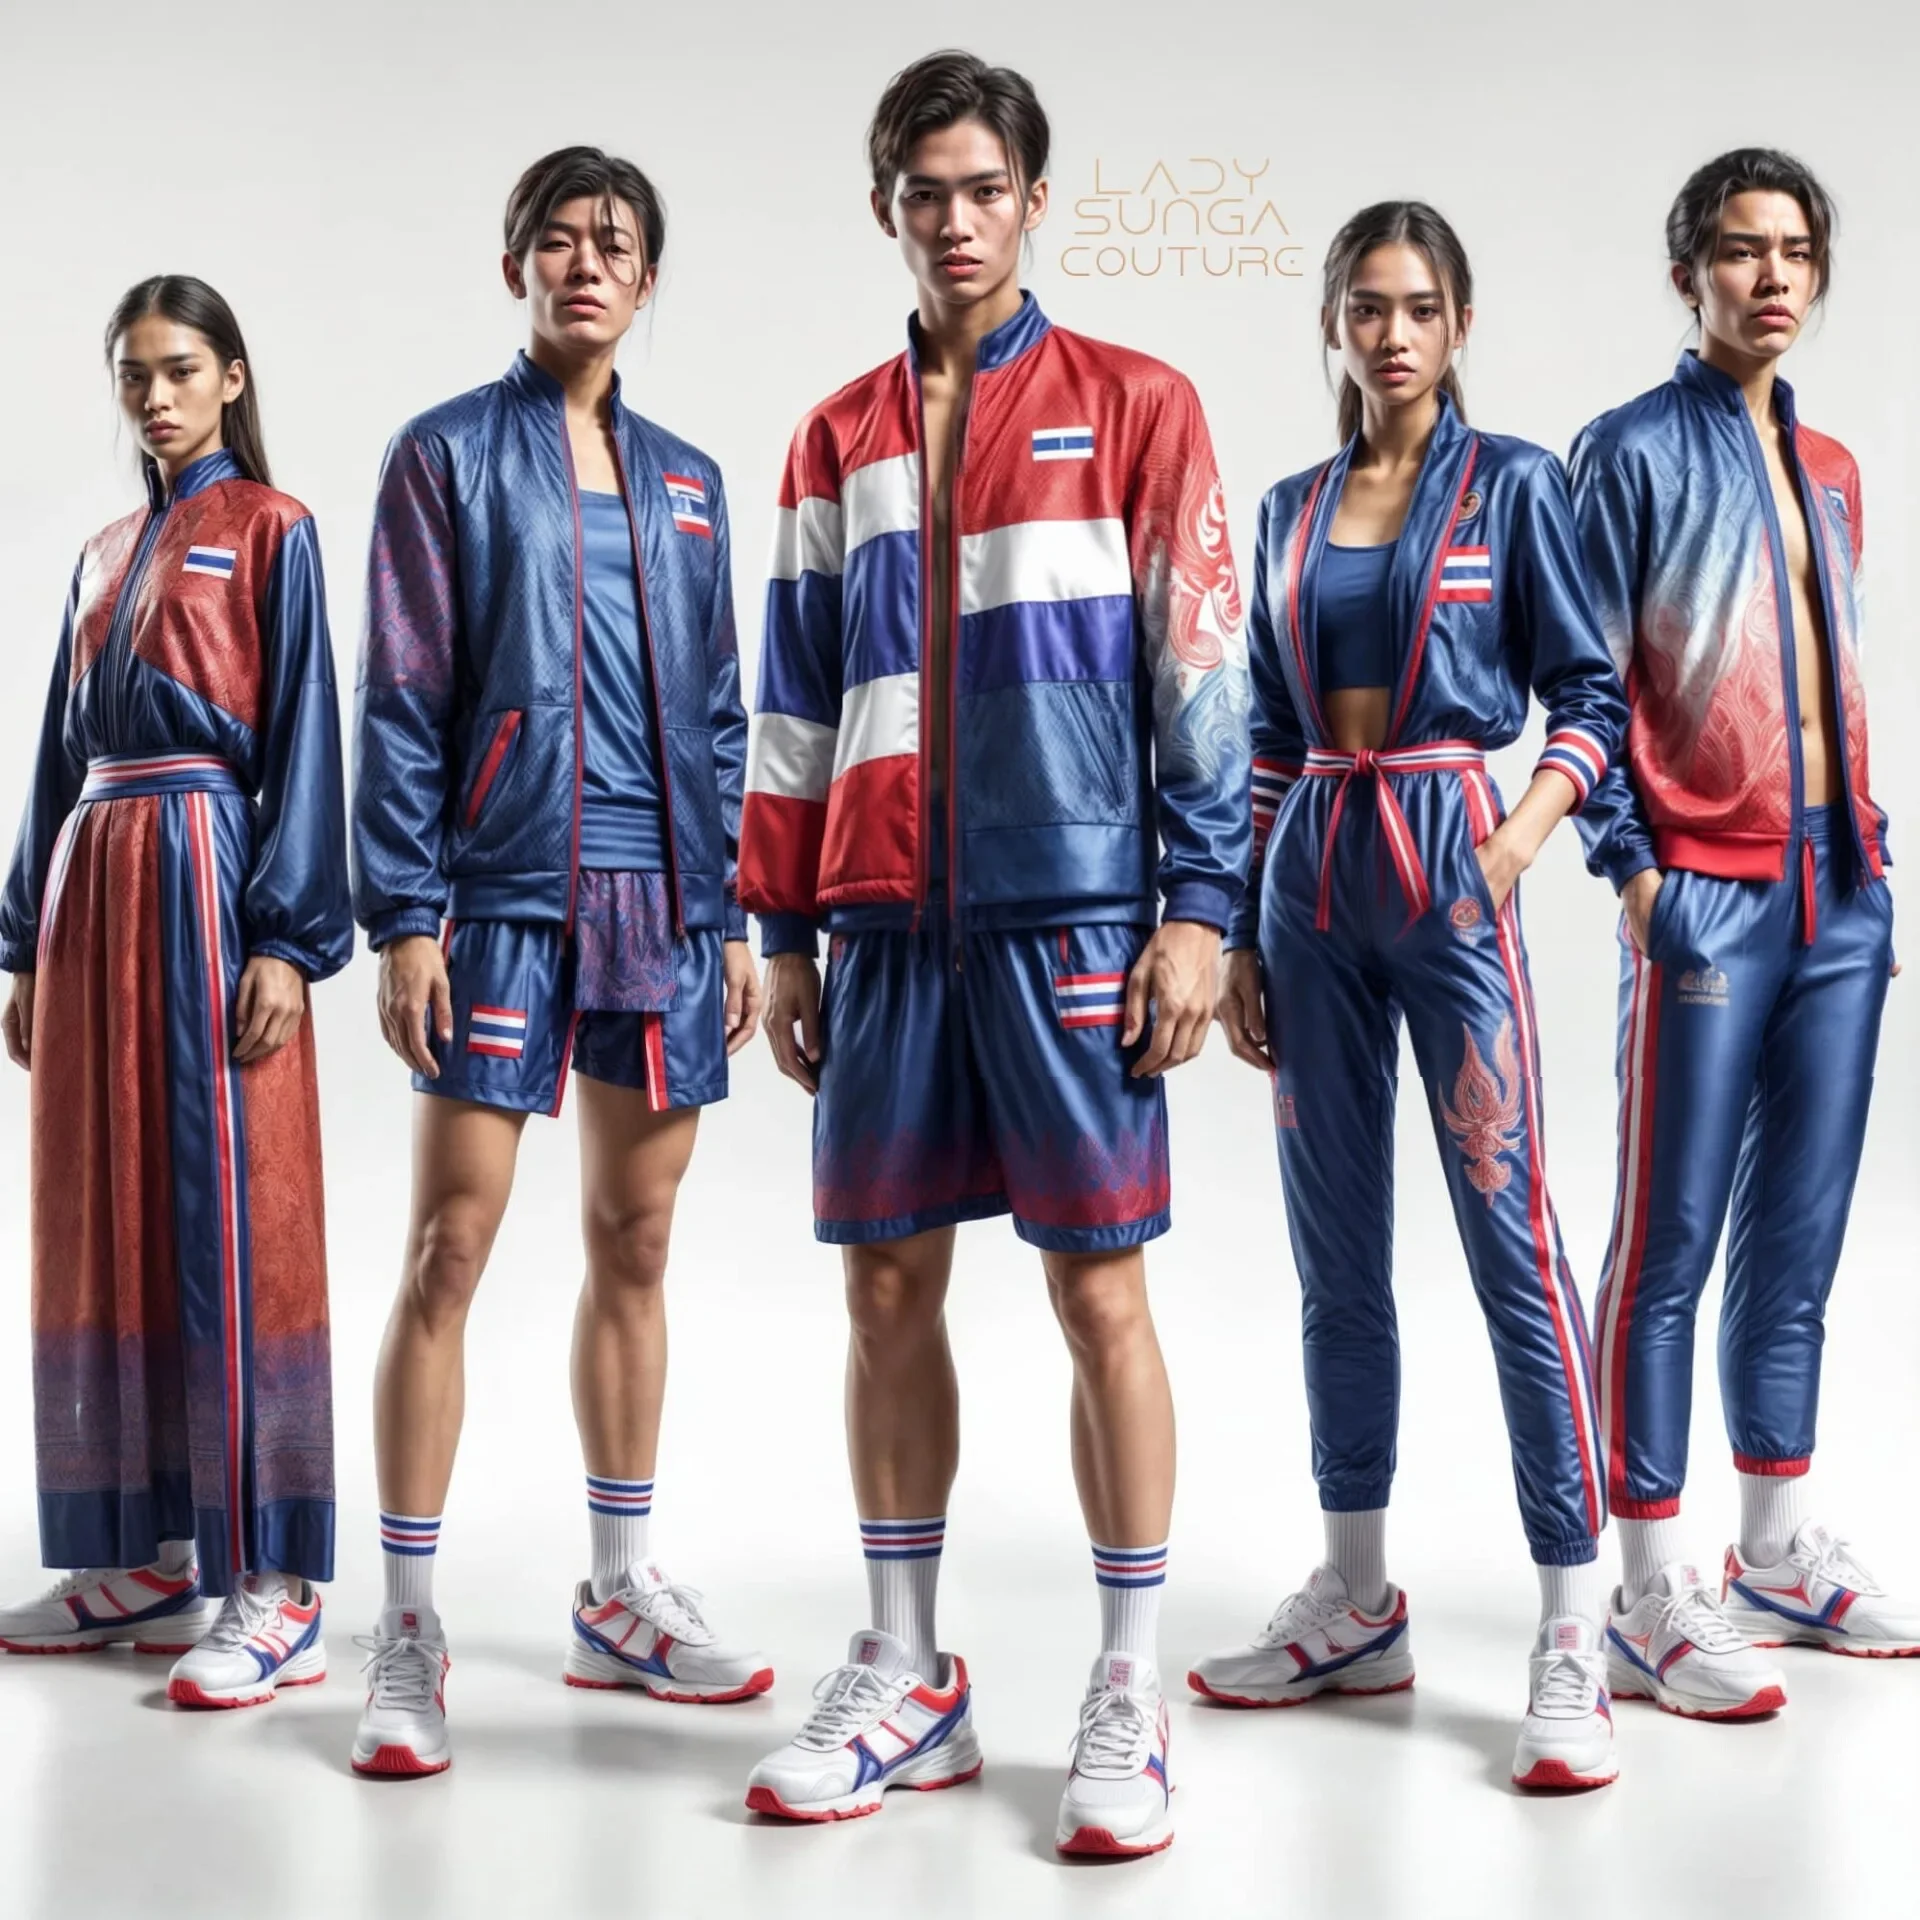 เพจ Facebook ดัง &Quot;Lady Sunga Couture&Quot; เผยภาพชุดยูนิฟอร์มนักกีฬาโอลิมปิกของประเทศไทยโดย Ai ที่จอสระอึงไม้โทจึ้ง!